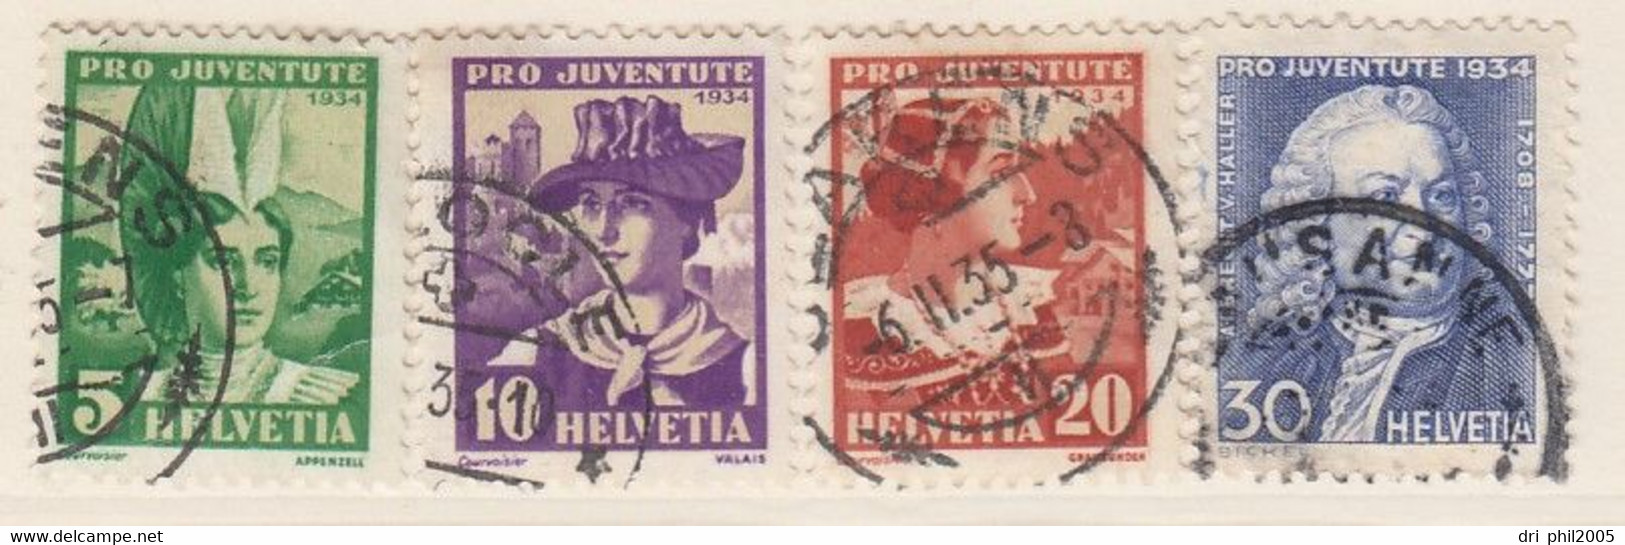 Suisse, séries complètes, timbres oblitérés, désarmement, paysages, Pro Juventute, Gothard, n° 254 -285, 1932-1935